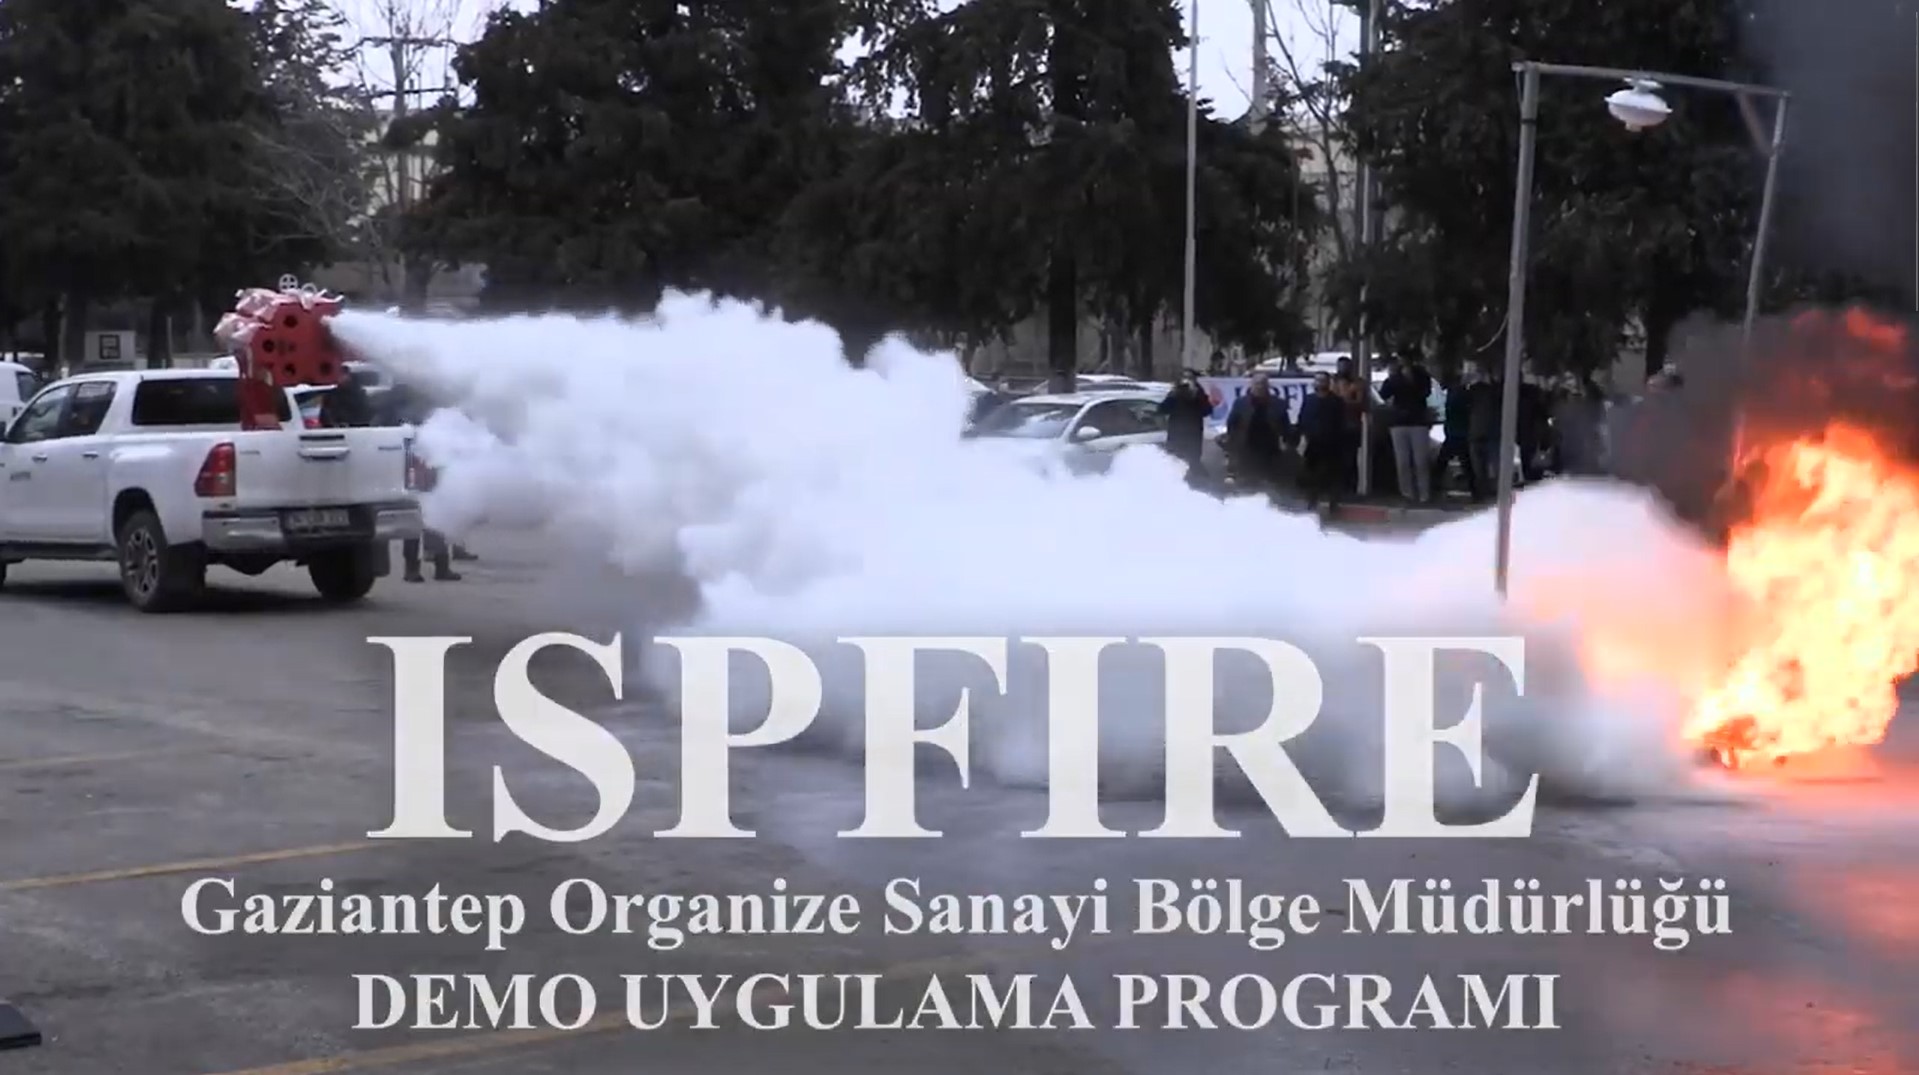 ISPFIRE Gaziantep Organize Sanayi Bölge Müdürlüğü Demo Uygulama Programı